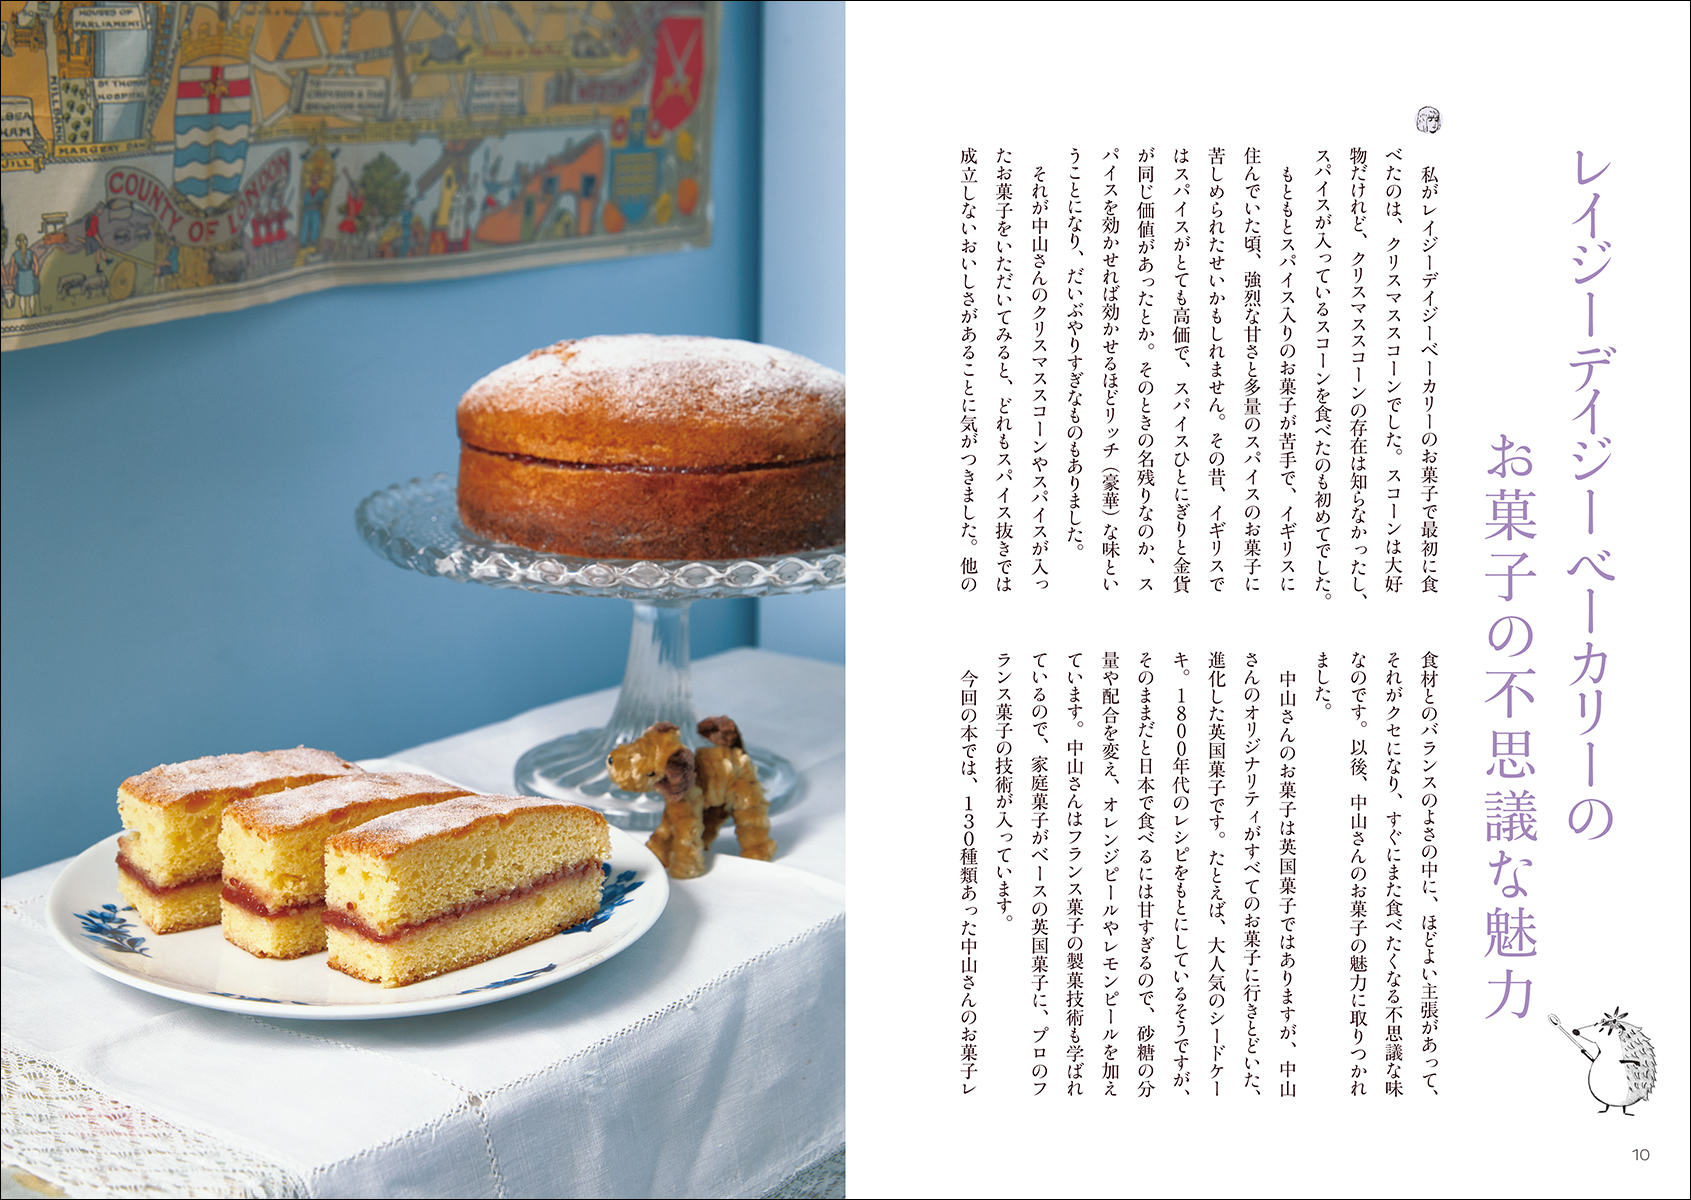 東京・湯島の人気英国菓子店Lazy Daisy Bakeryのおいしい秘密がわかる